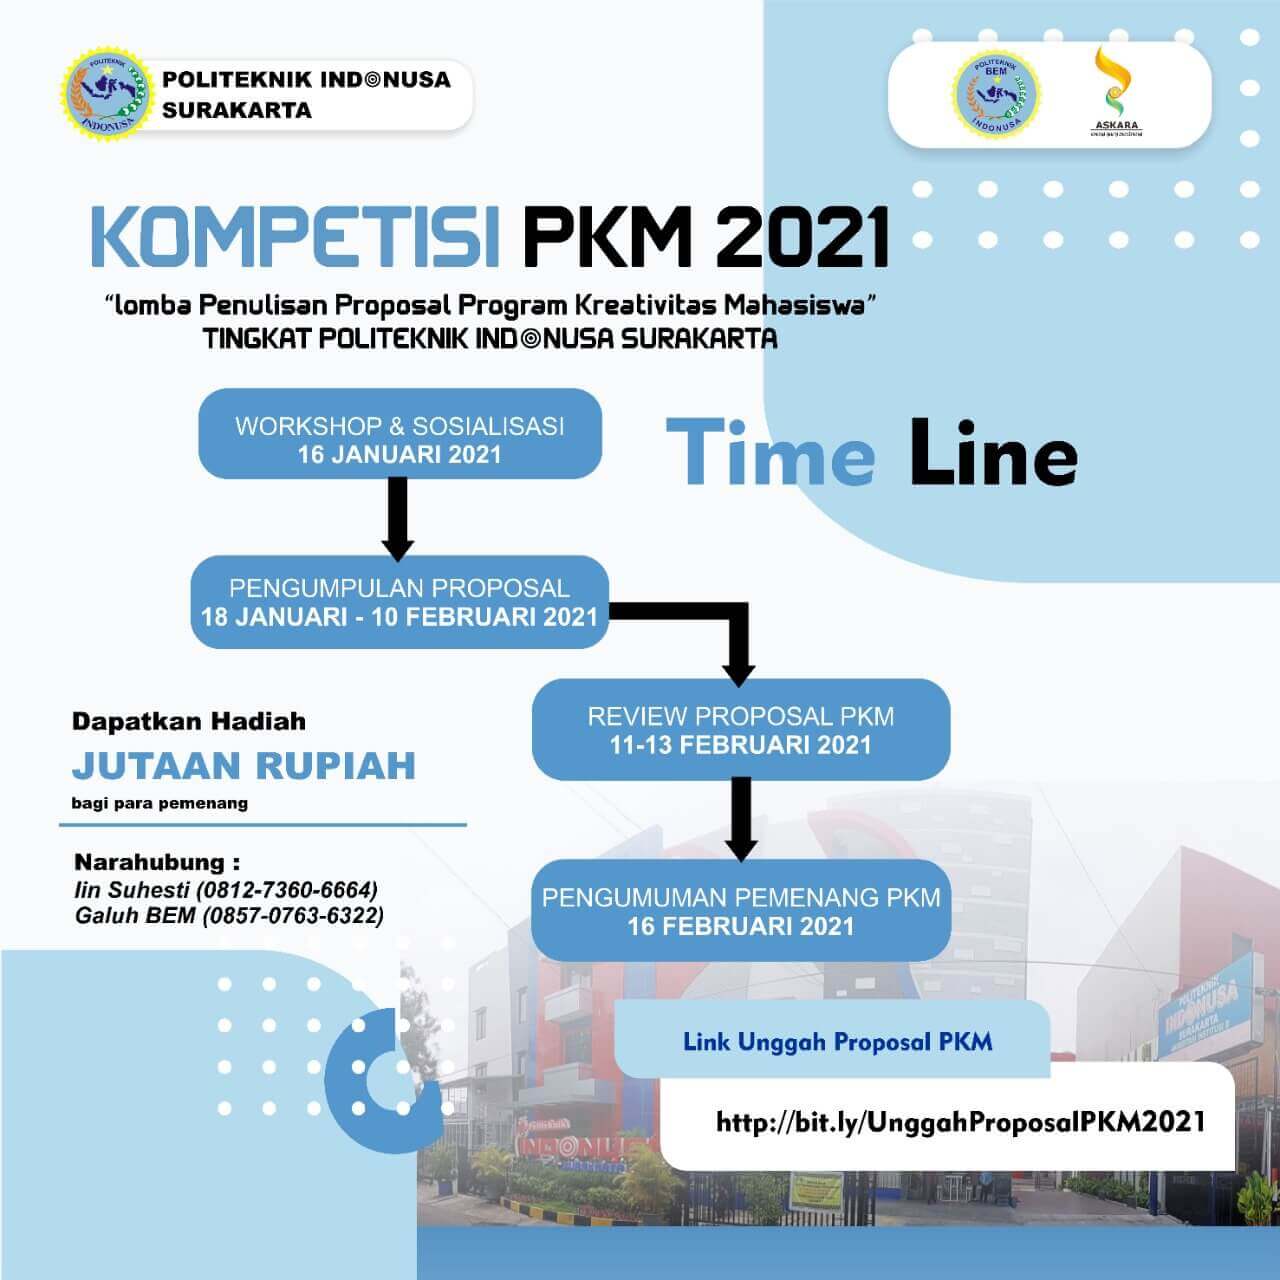 Kompetisi PKM 2021